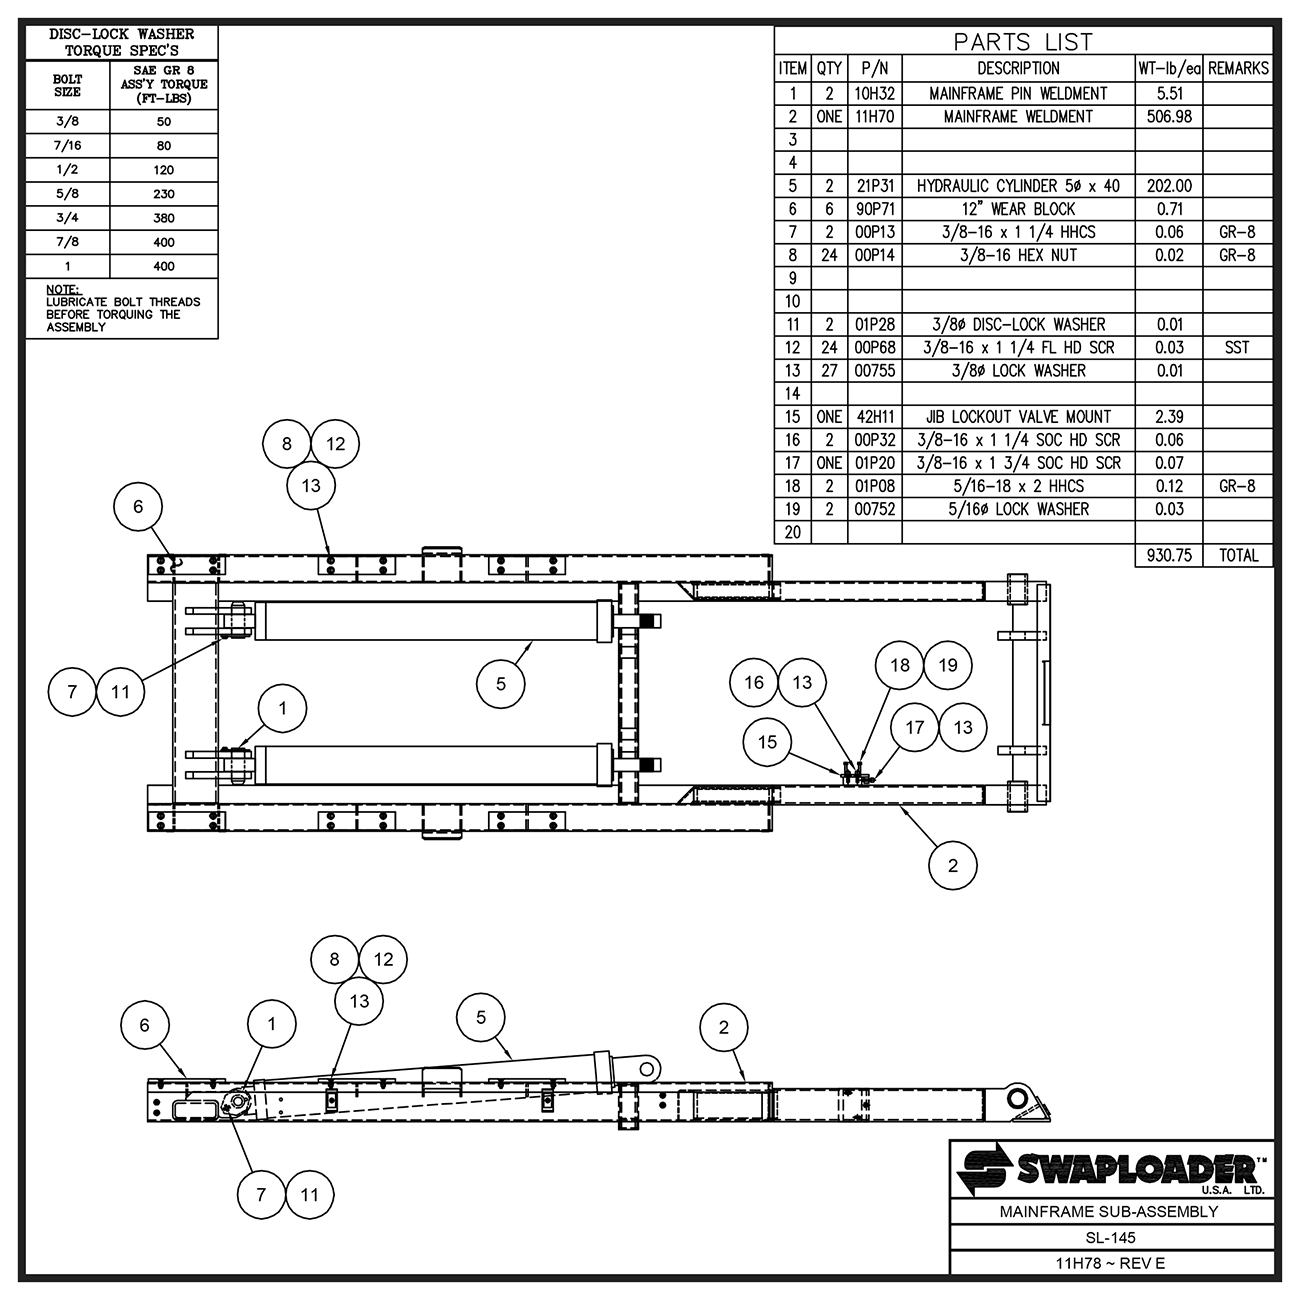 Swaploader SL-145 Mainframe Sub Assembly Diagram